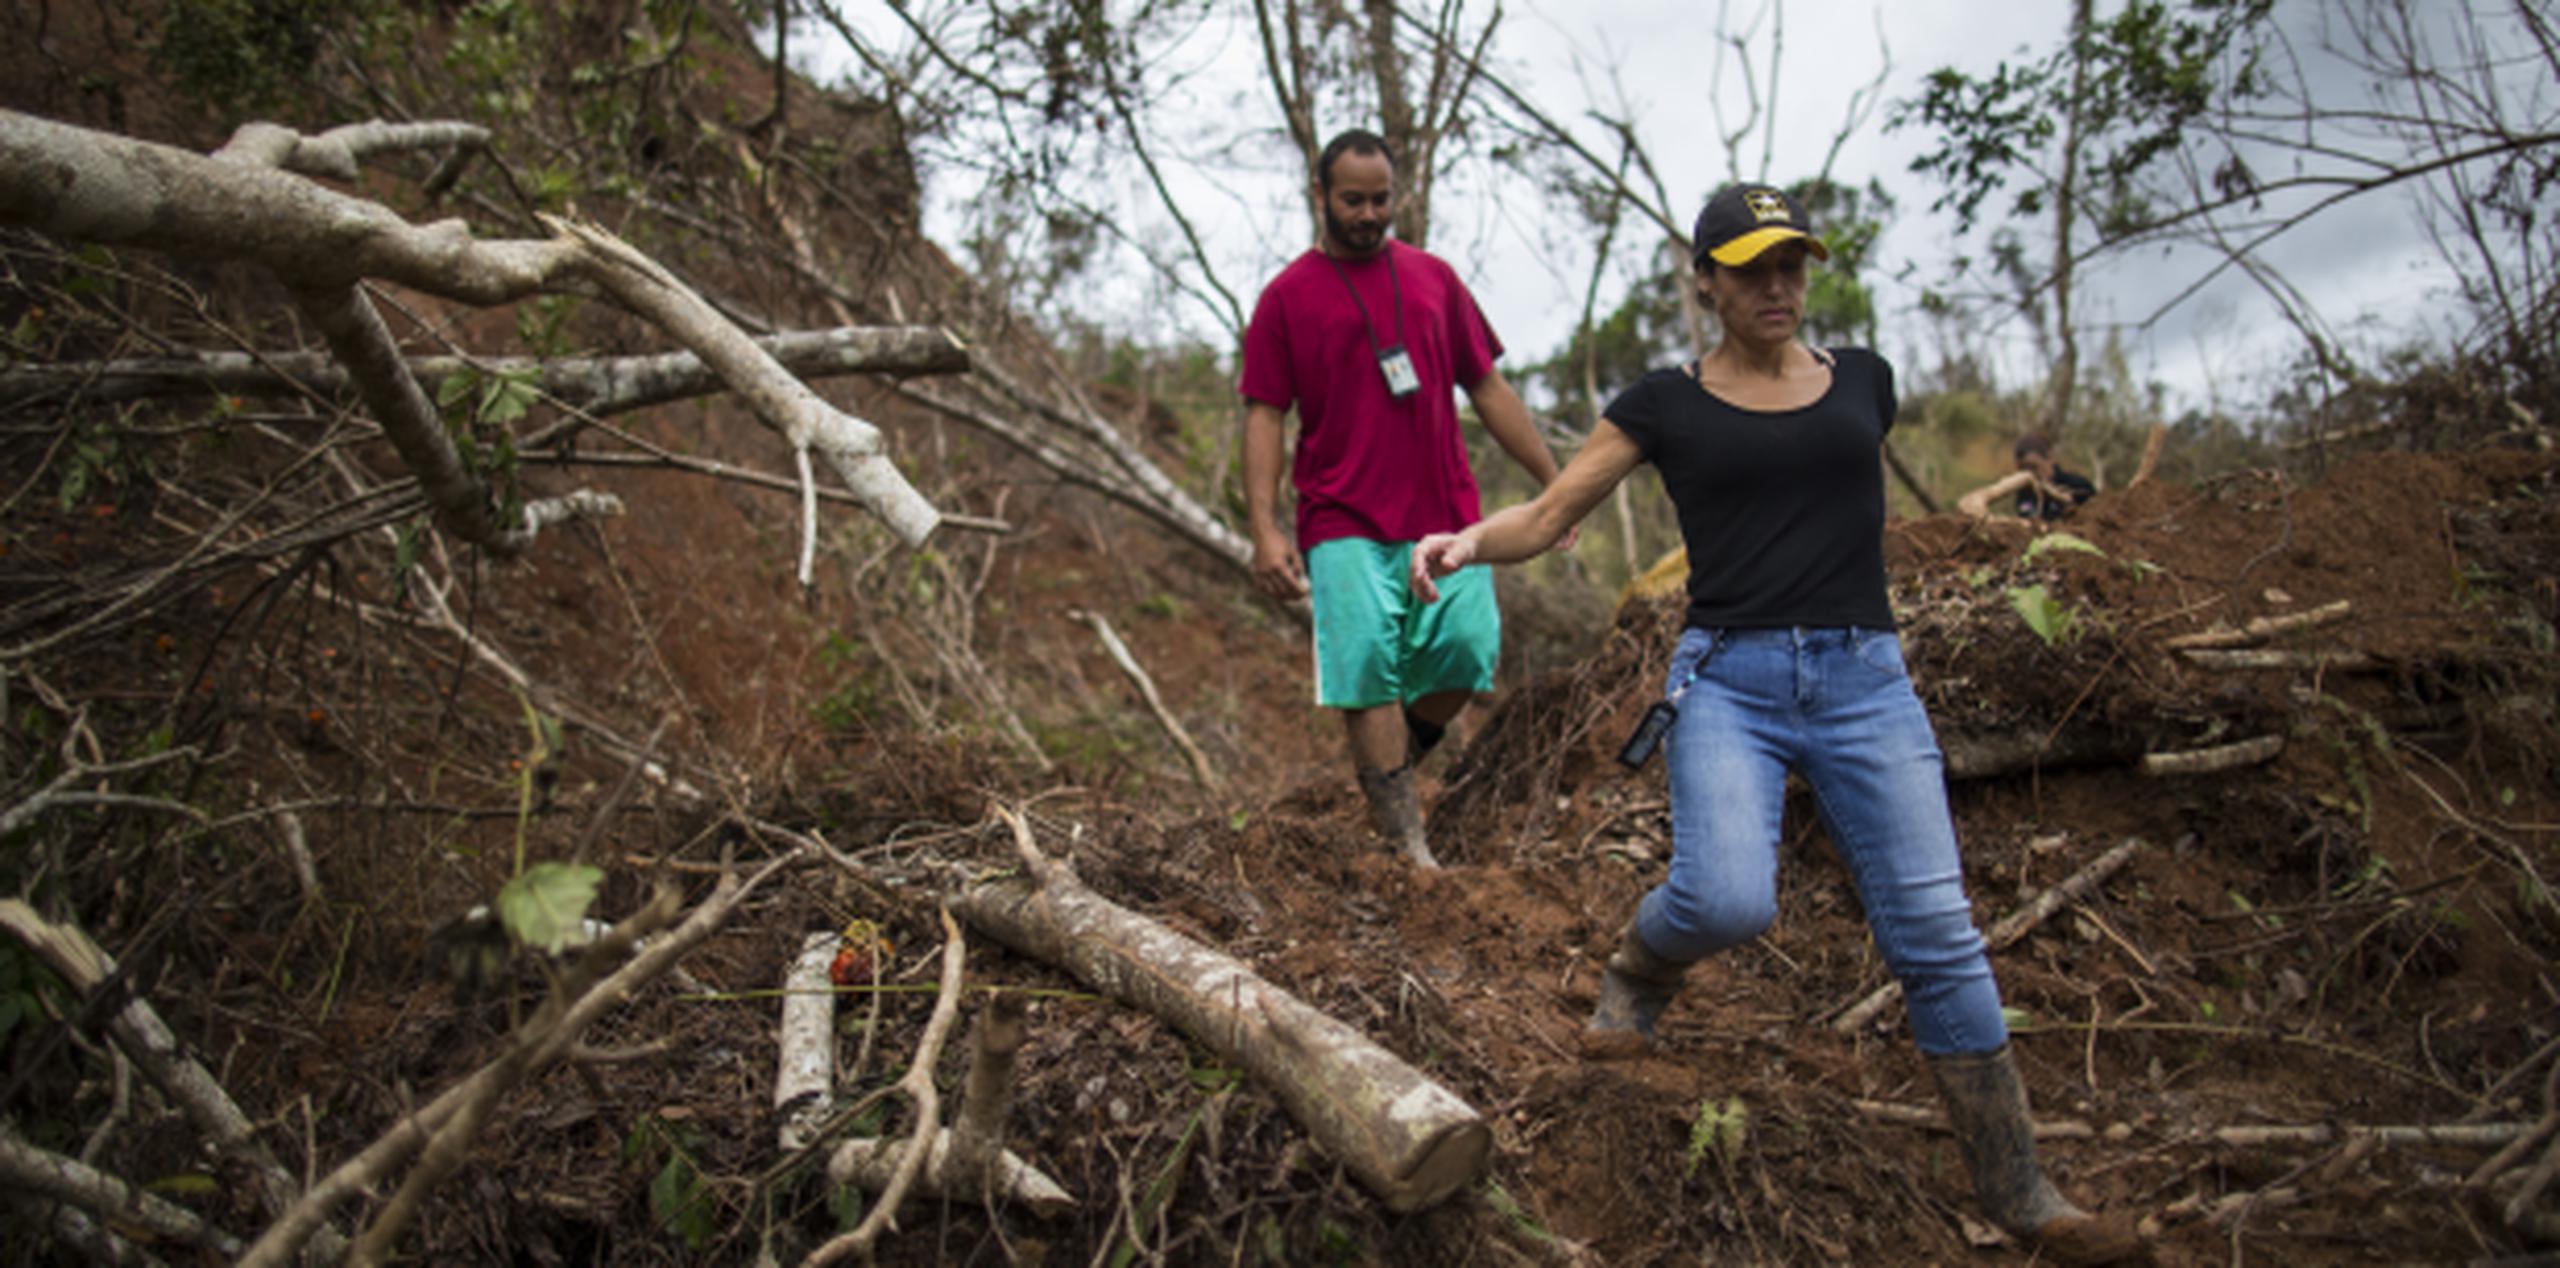 Luis Rodríguez y Caterina Rachele caminaron entre el fango y los escombros por seis horas para pedir ayuda, luego de los estragos del huracán María que los mantenían incomunicados. (tonito.zayas@gfrmedia.com)